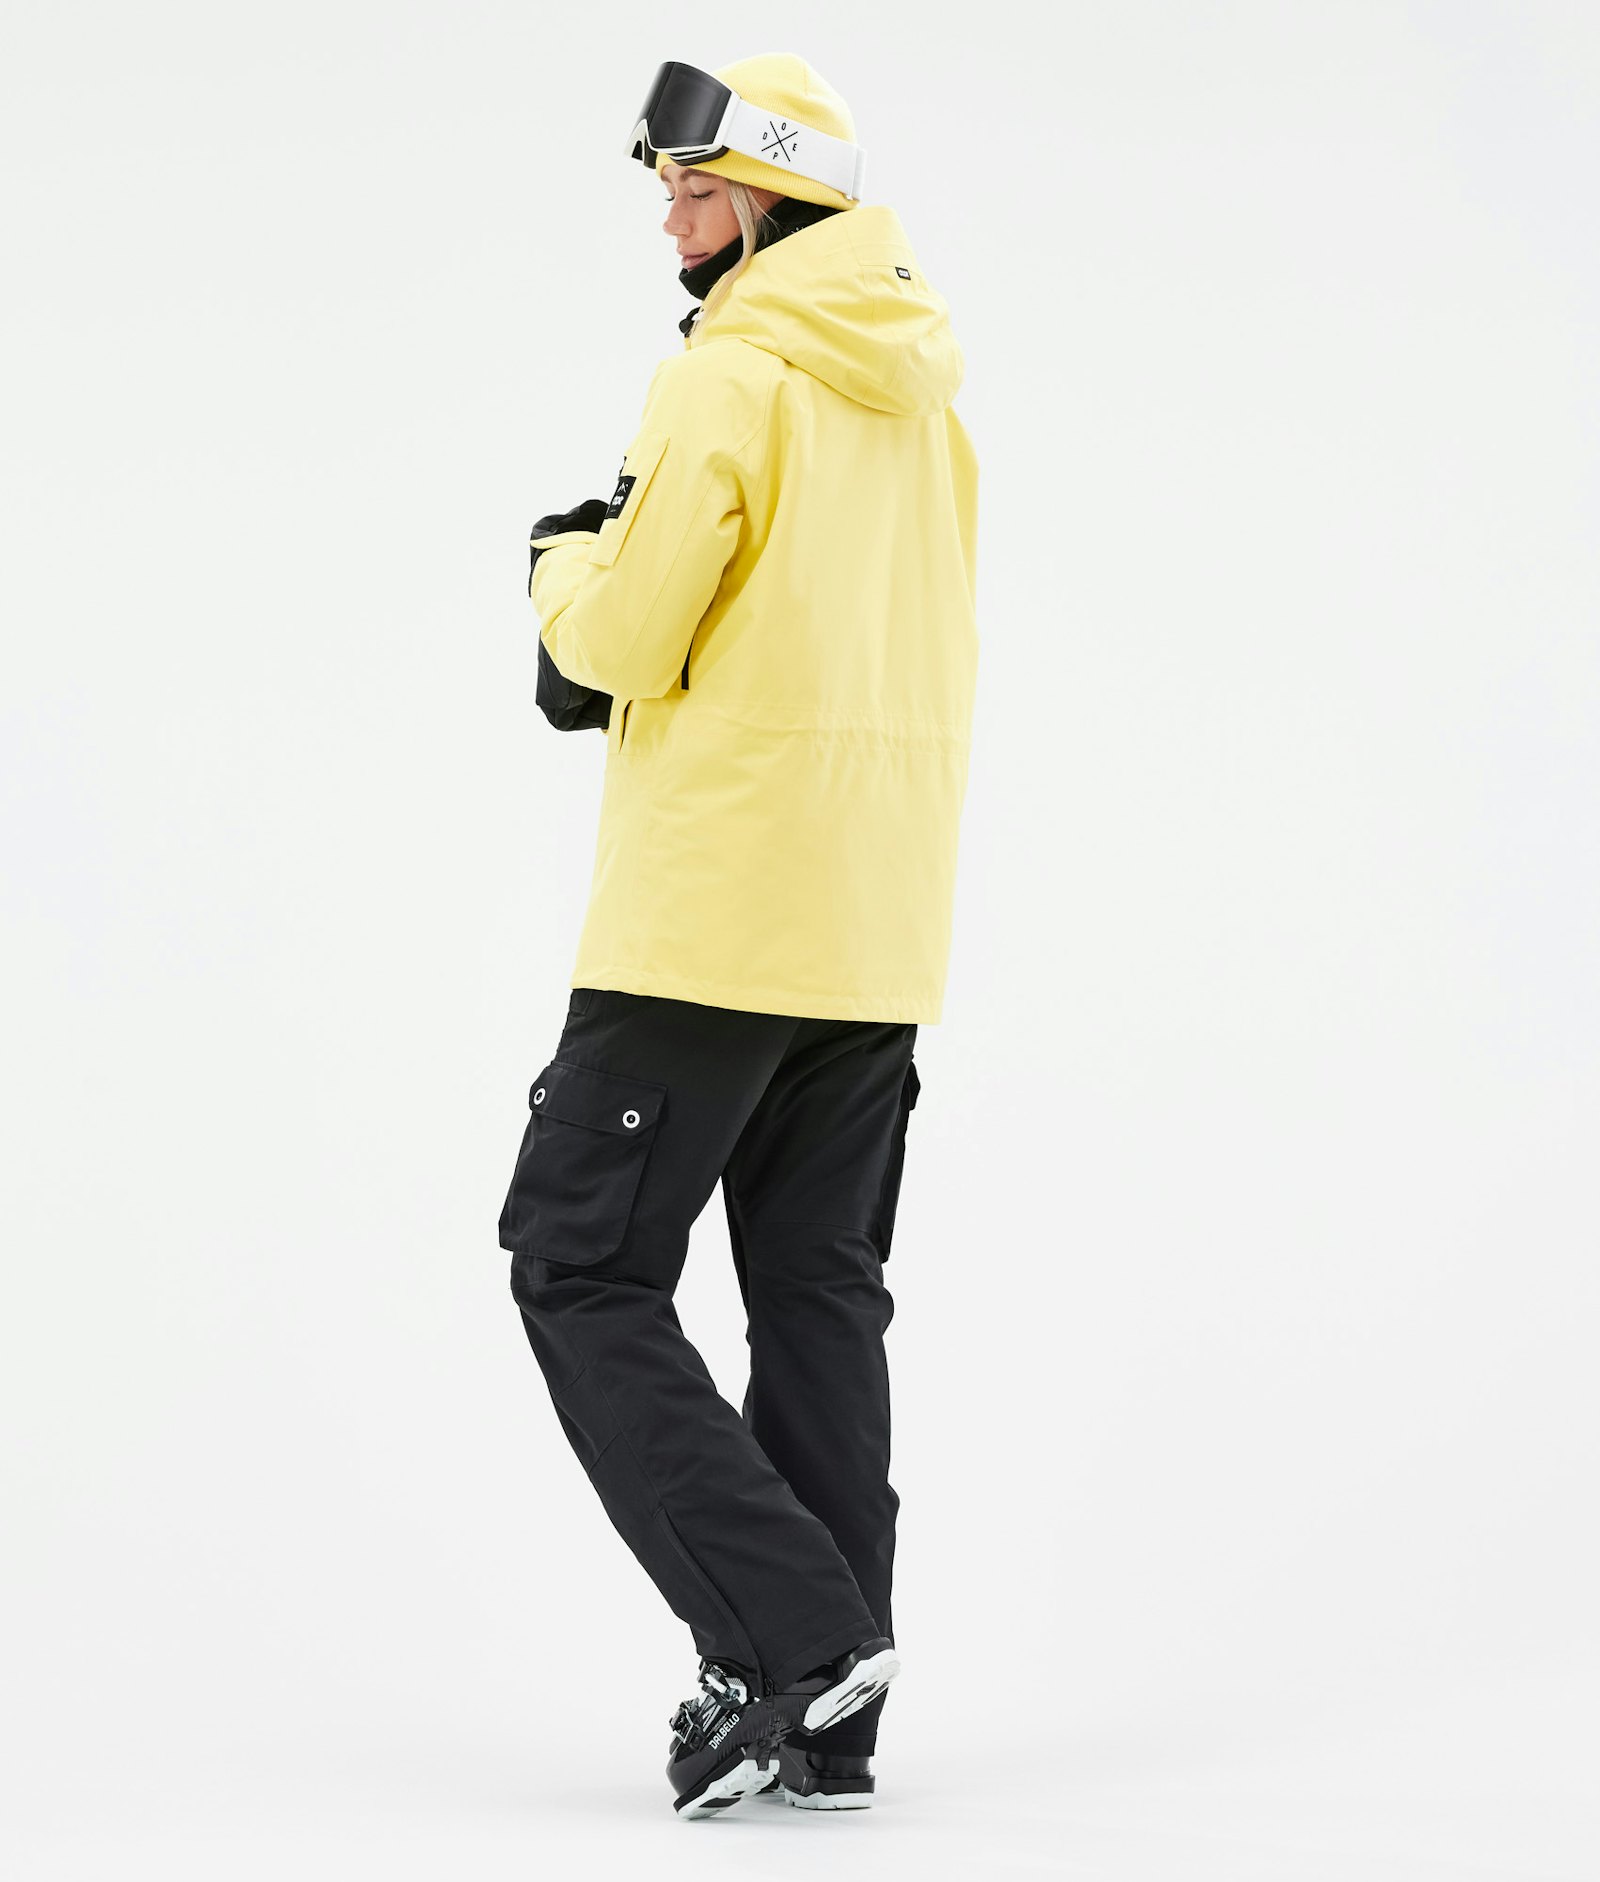 Annok W 2021 Skijacke Damen Faded Yellow